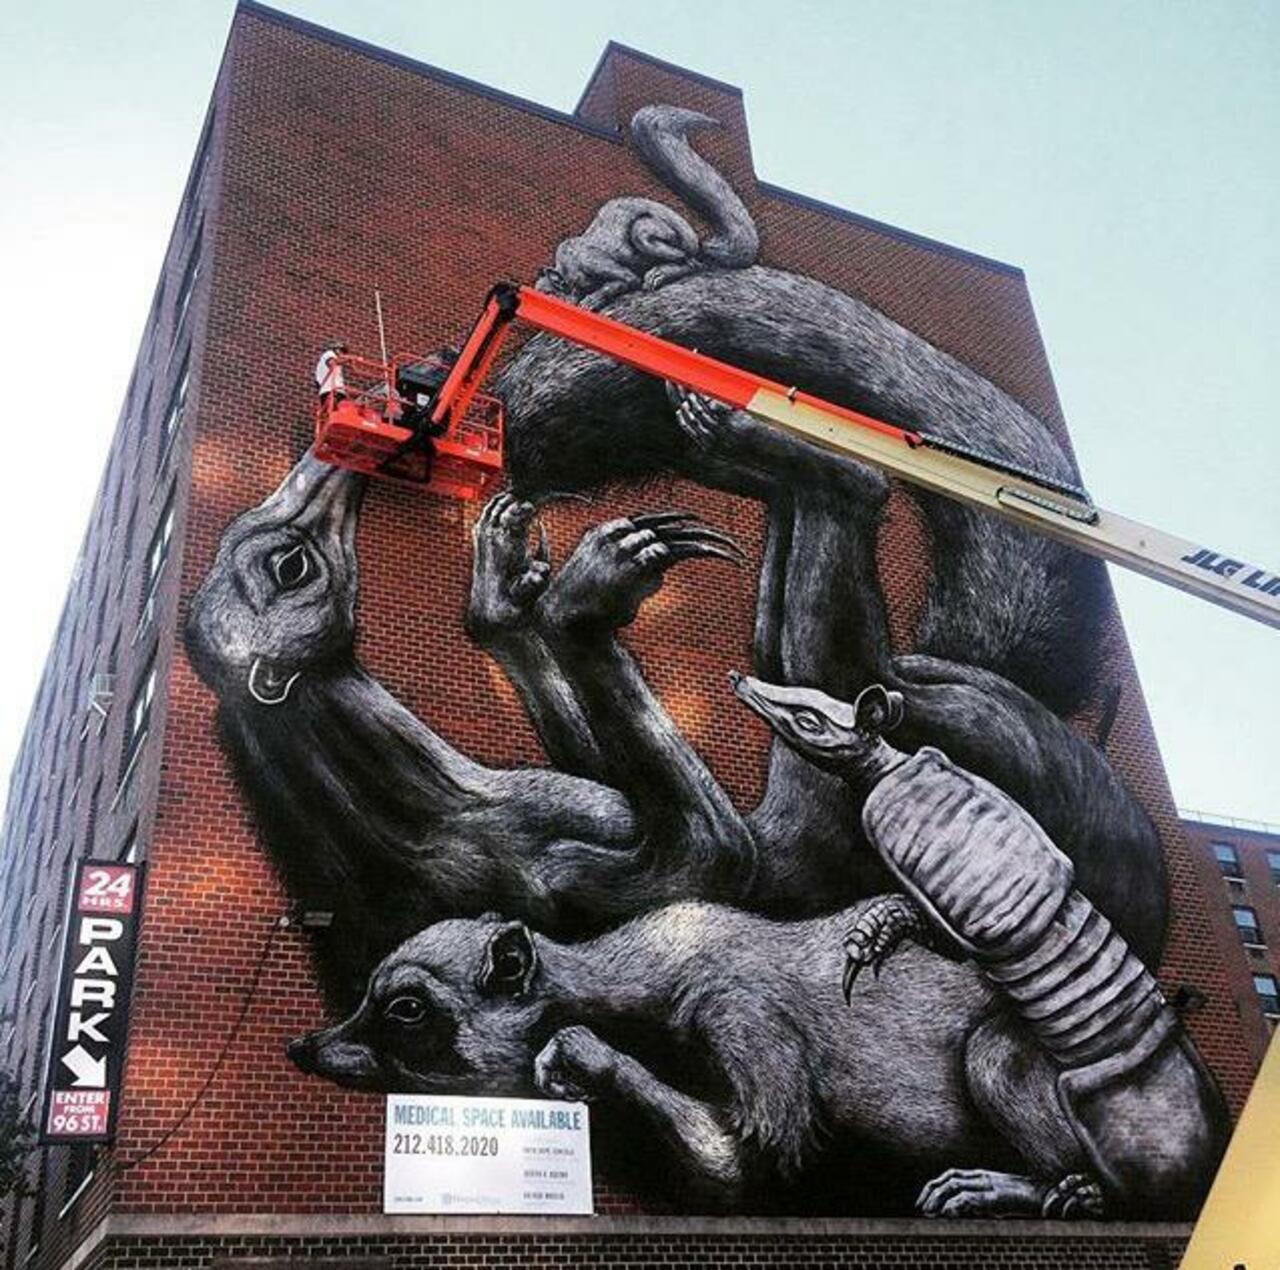 Street Art in progress by ROA in NYC

#art #graffiti #mural #streetart http://t.co/nEJoDcIxEm